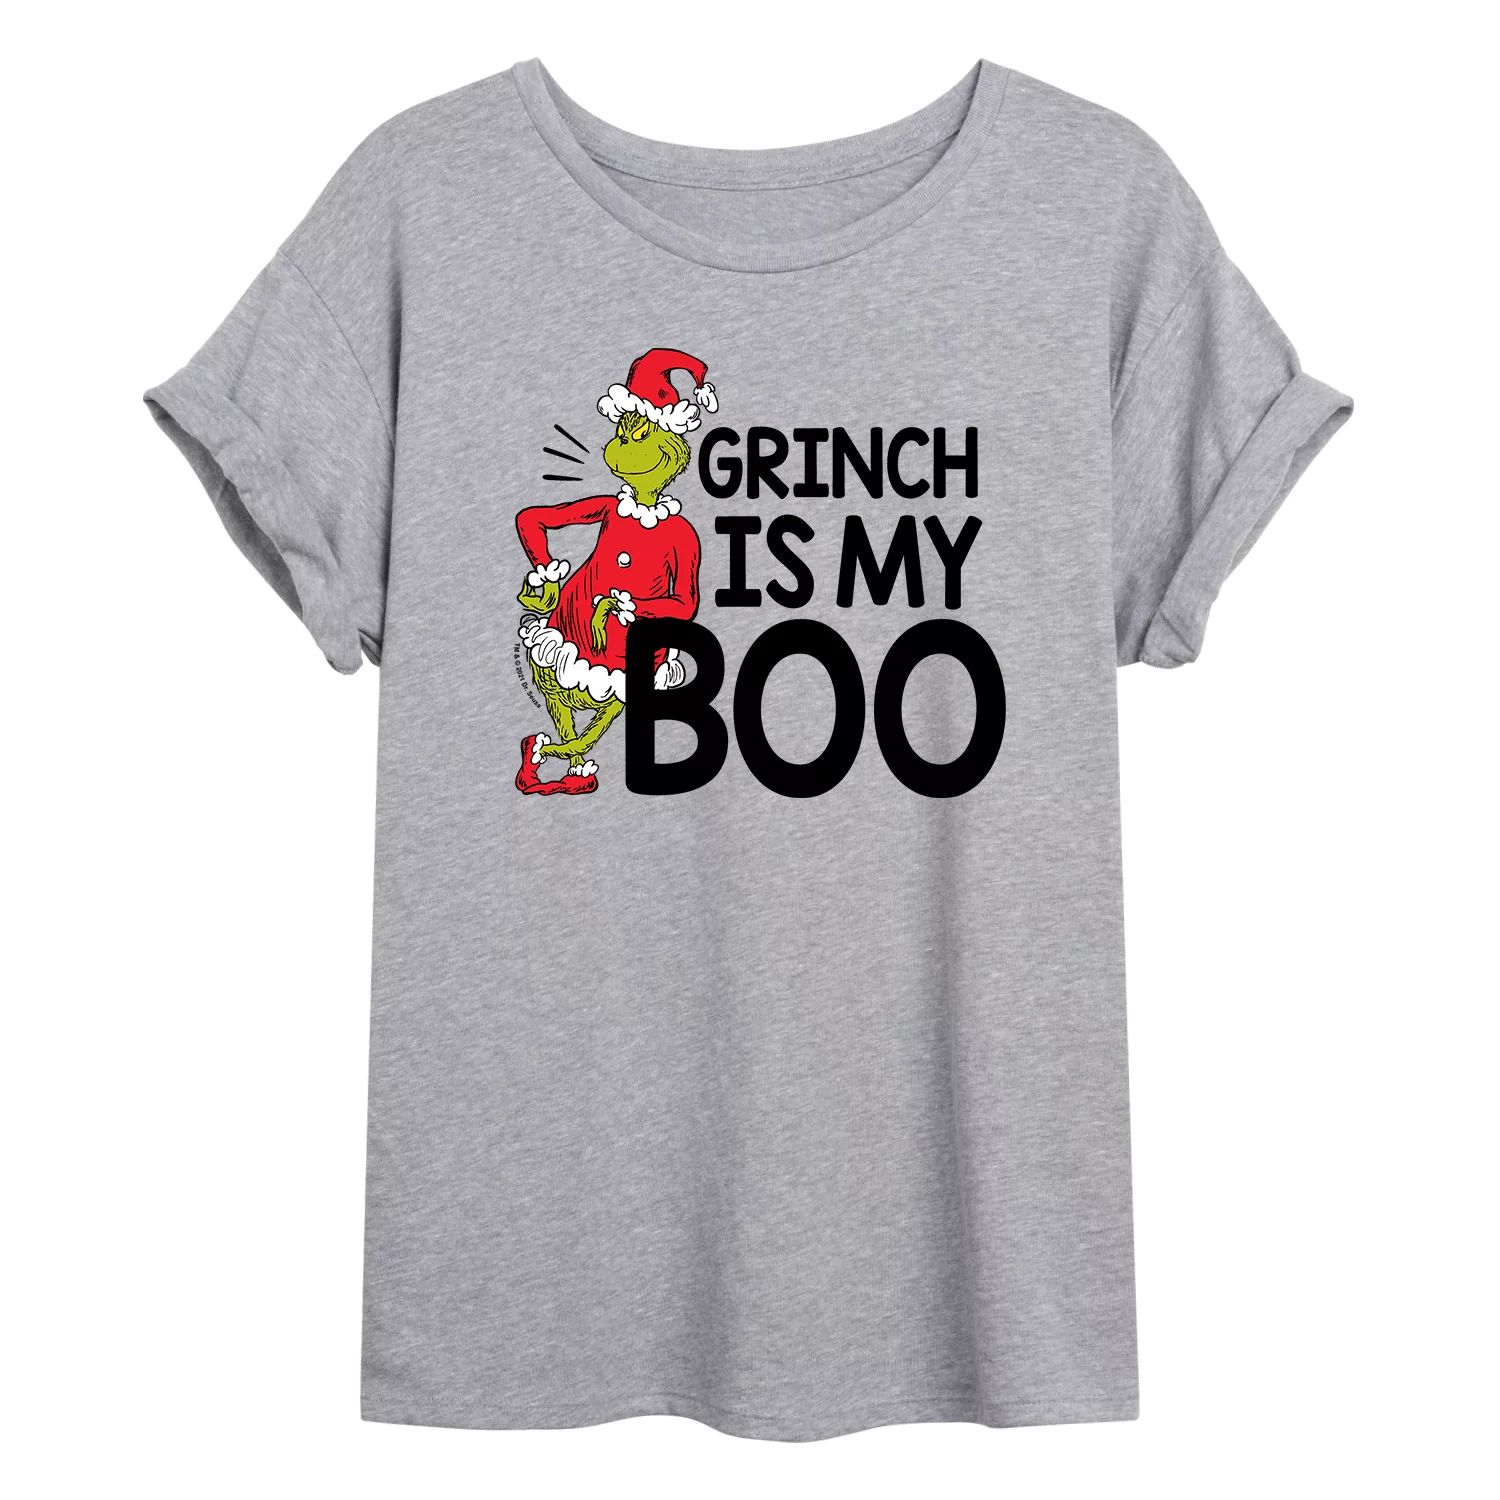 цена Огромная футболка с рисунком «Доктор Сьюз Гринч» для юниоров — My Boo Licensed Character